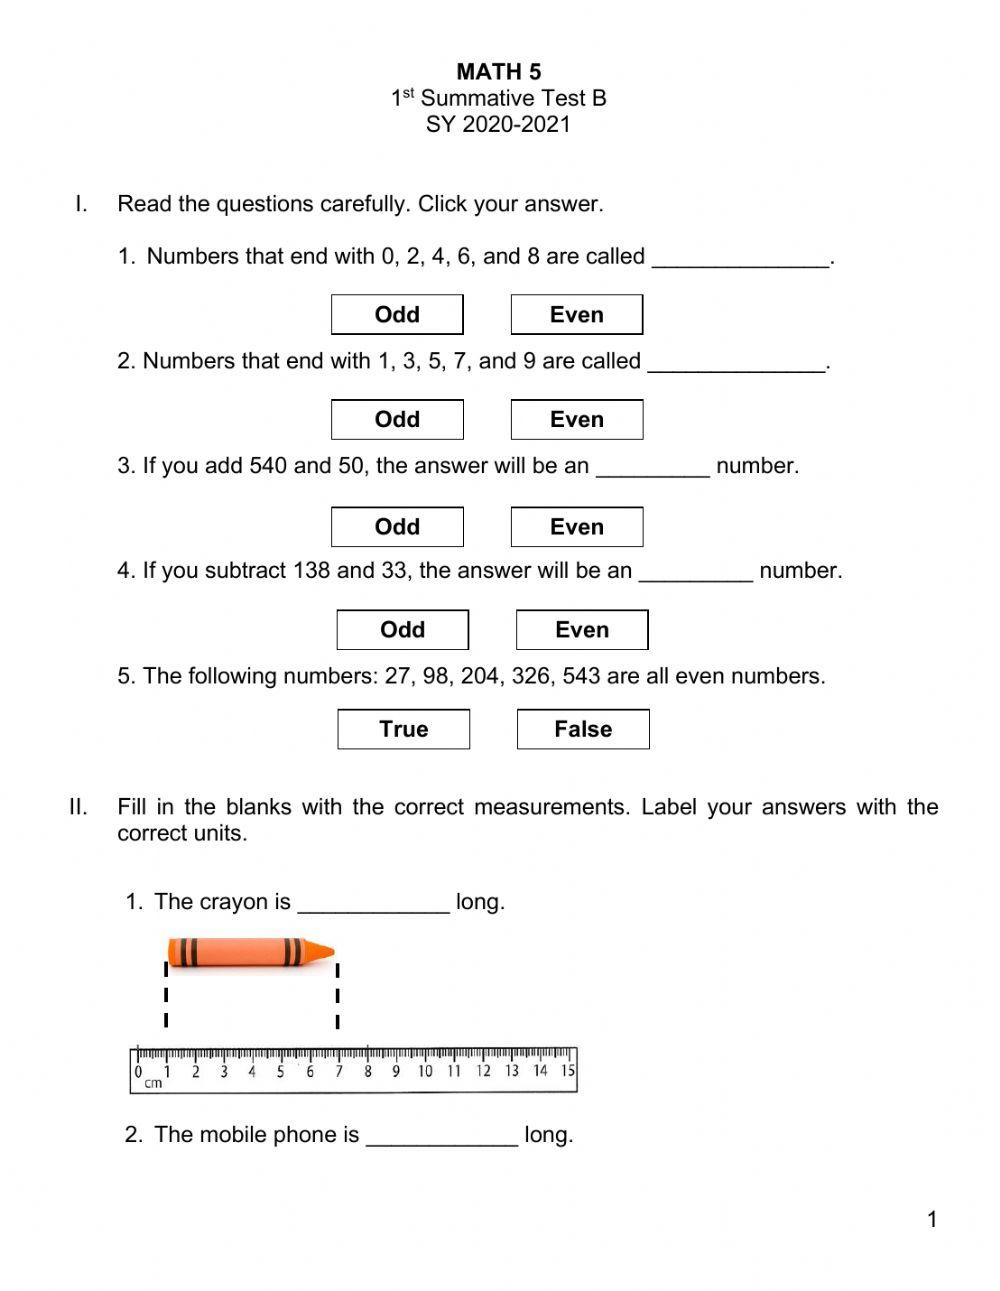 Math 5 1st Qtr Summative Test B